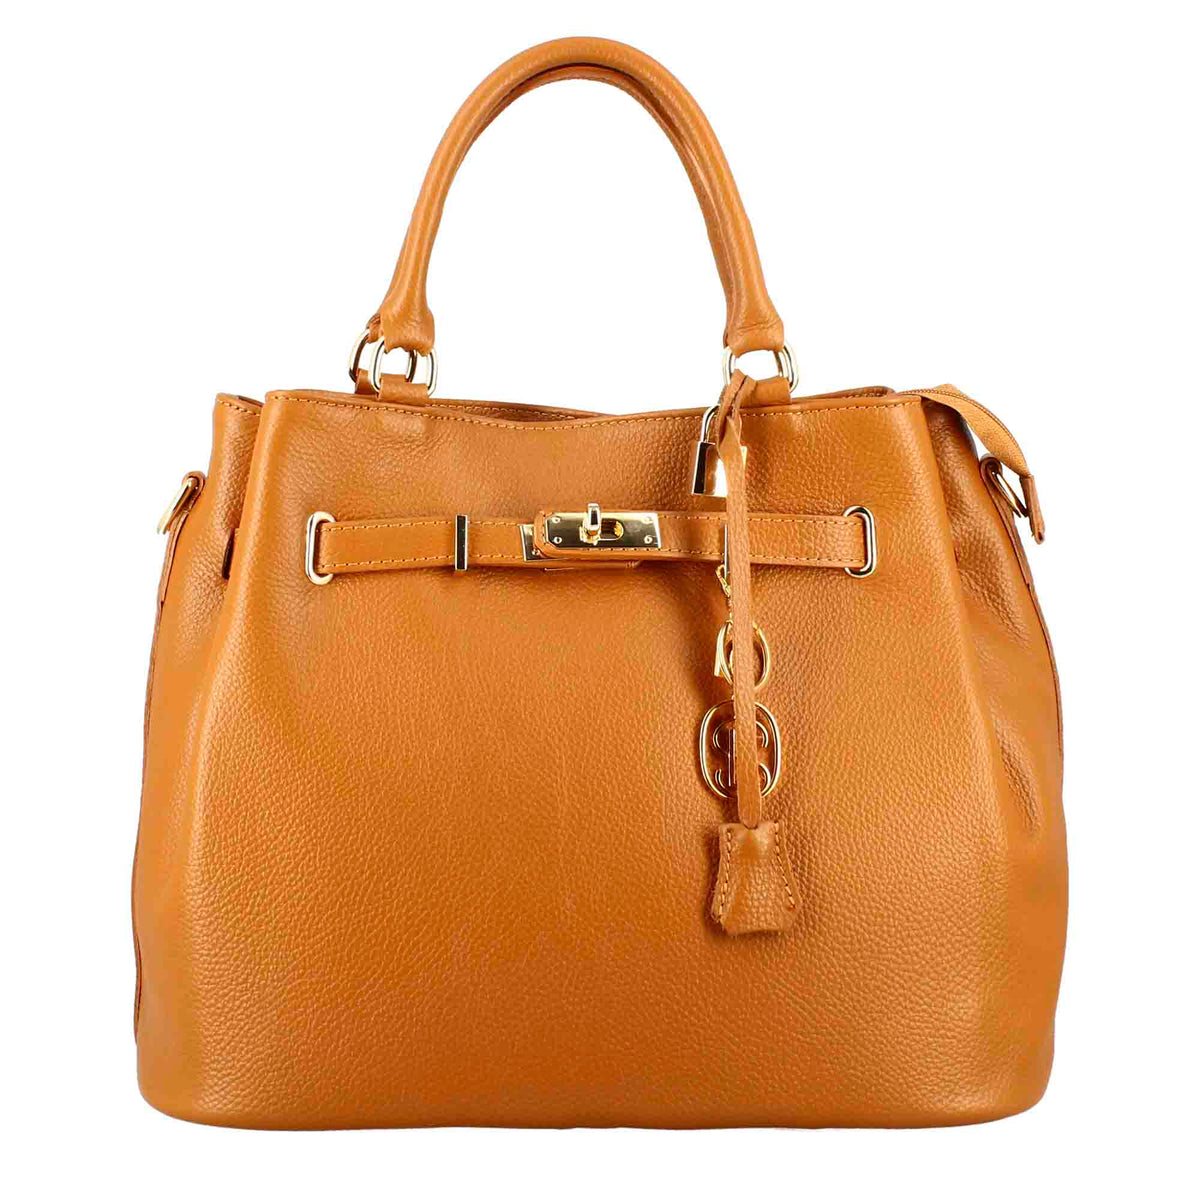 Frida leather handbag with removable brown shoulder strap